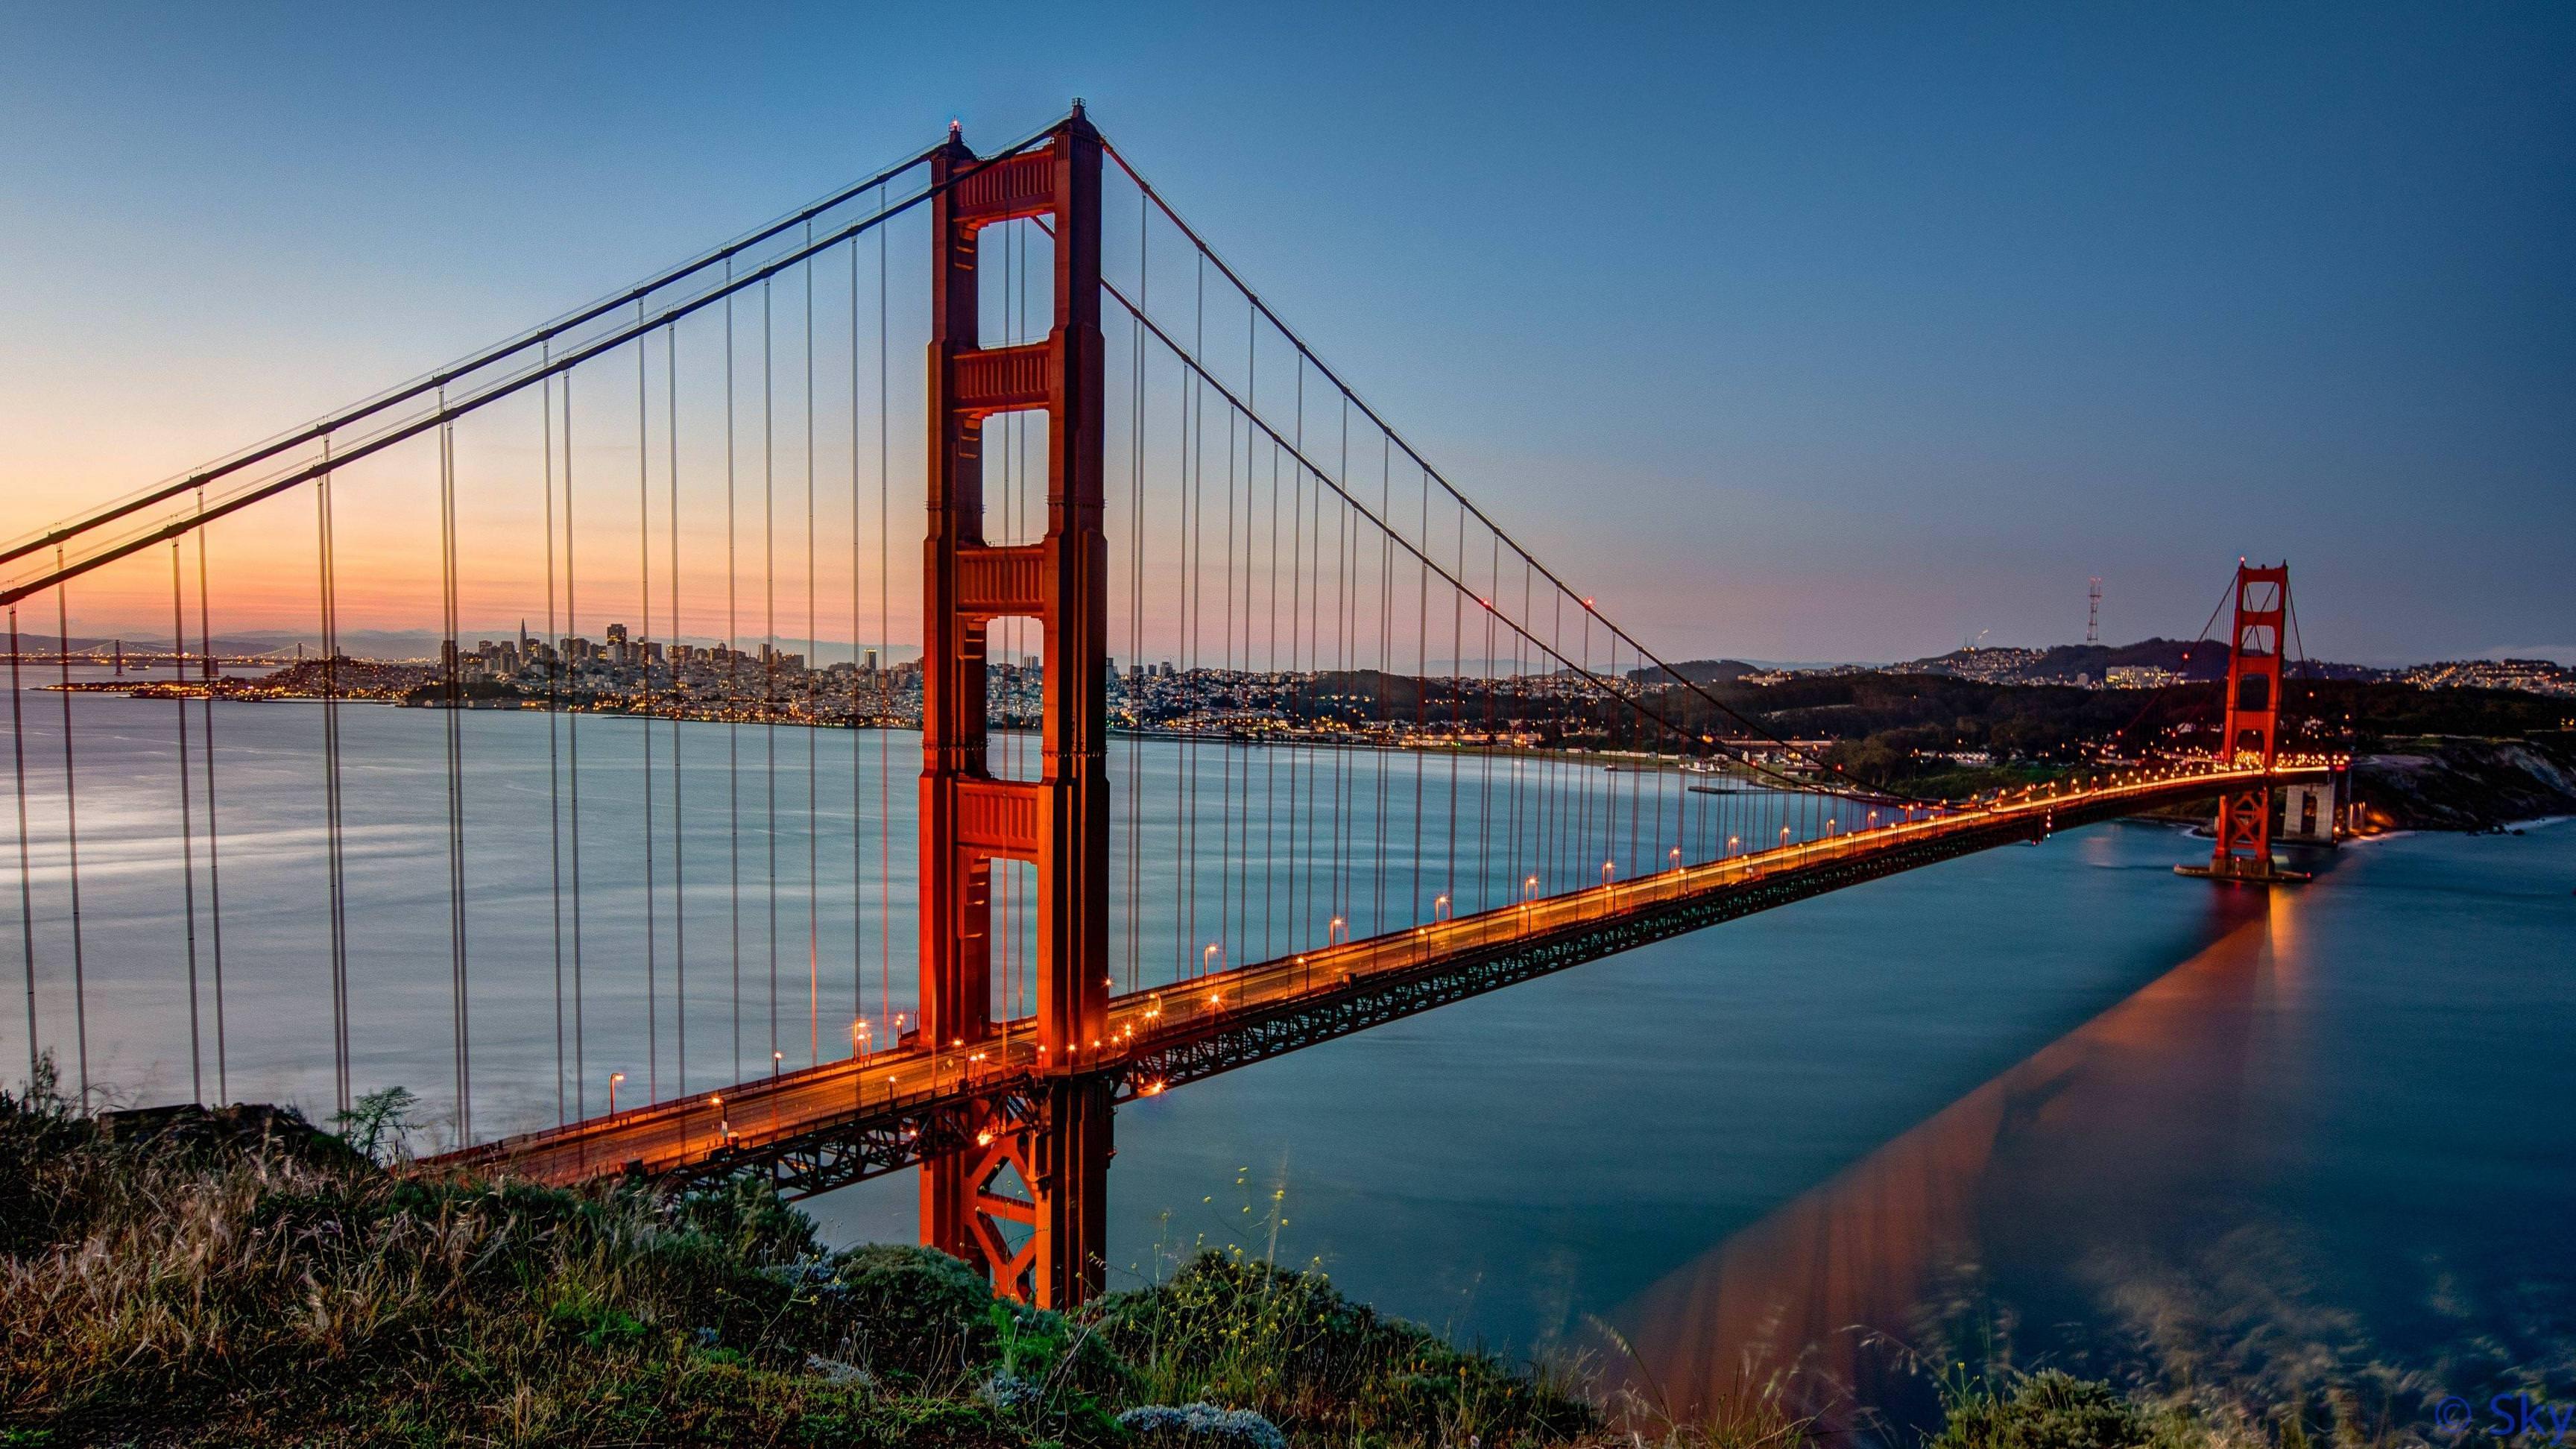 3840x2160 Hình nền Thành phố San Francisco 2018 tốt nhất.  iCon hình nền HD